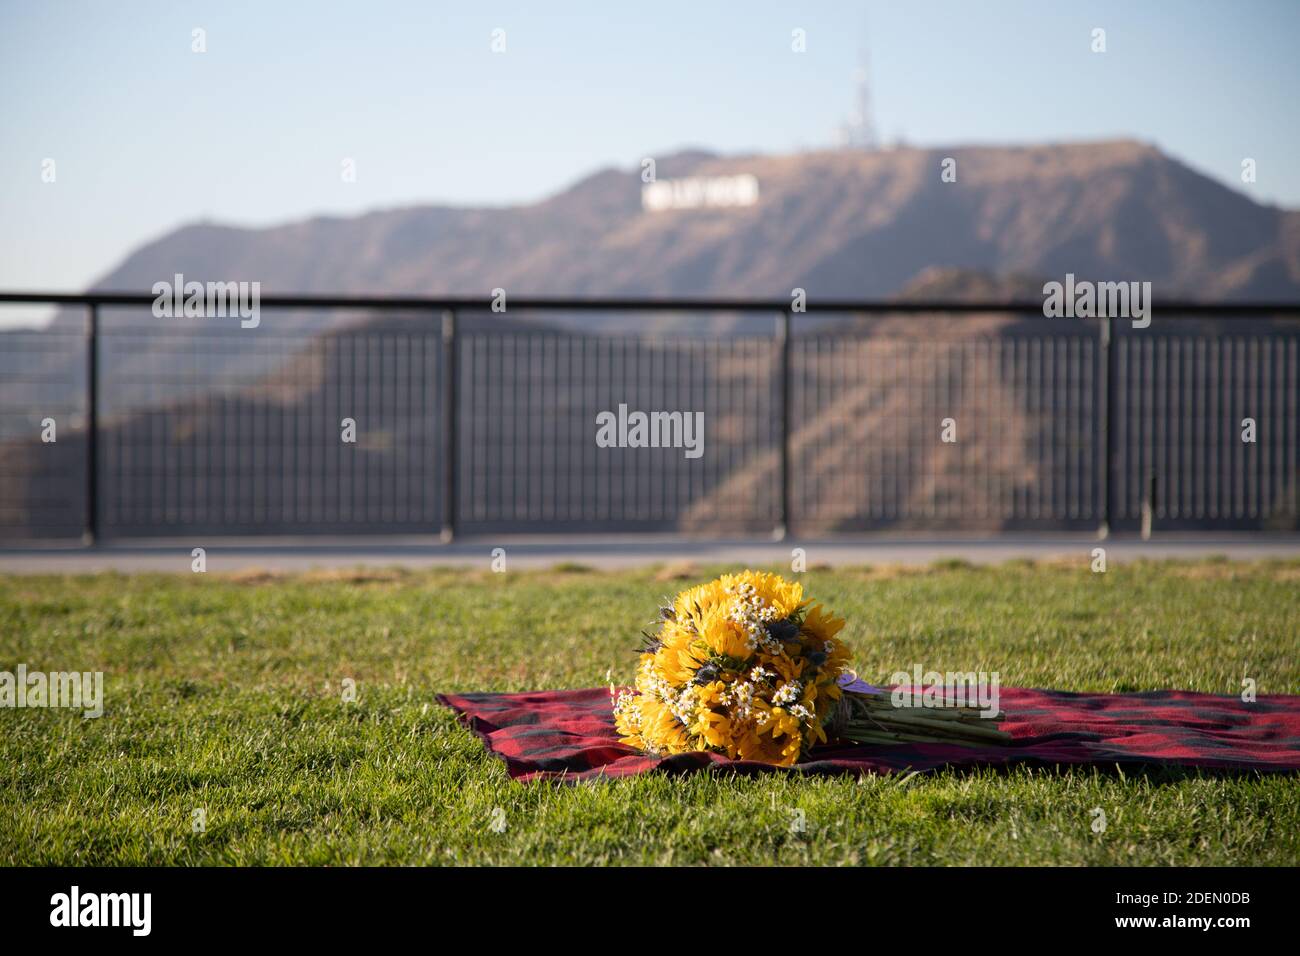 LOS ANGELES, CALIFORNIA, USA - 22. Nov 2020: Ein Sonnenblumenstrauß liegt auf einer Decke mit den Hollywood Hills im Hintergrund. Stockfoto